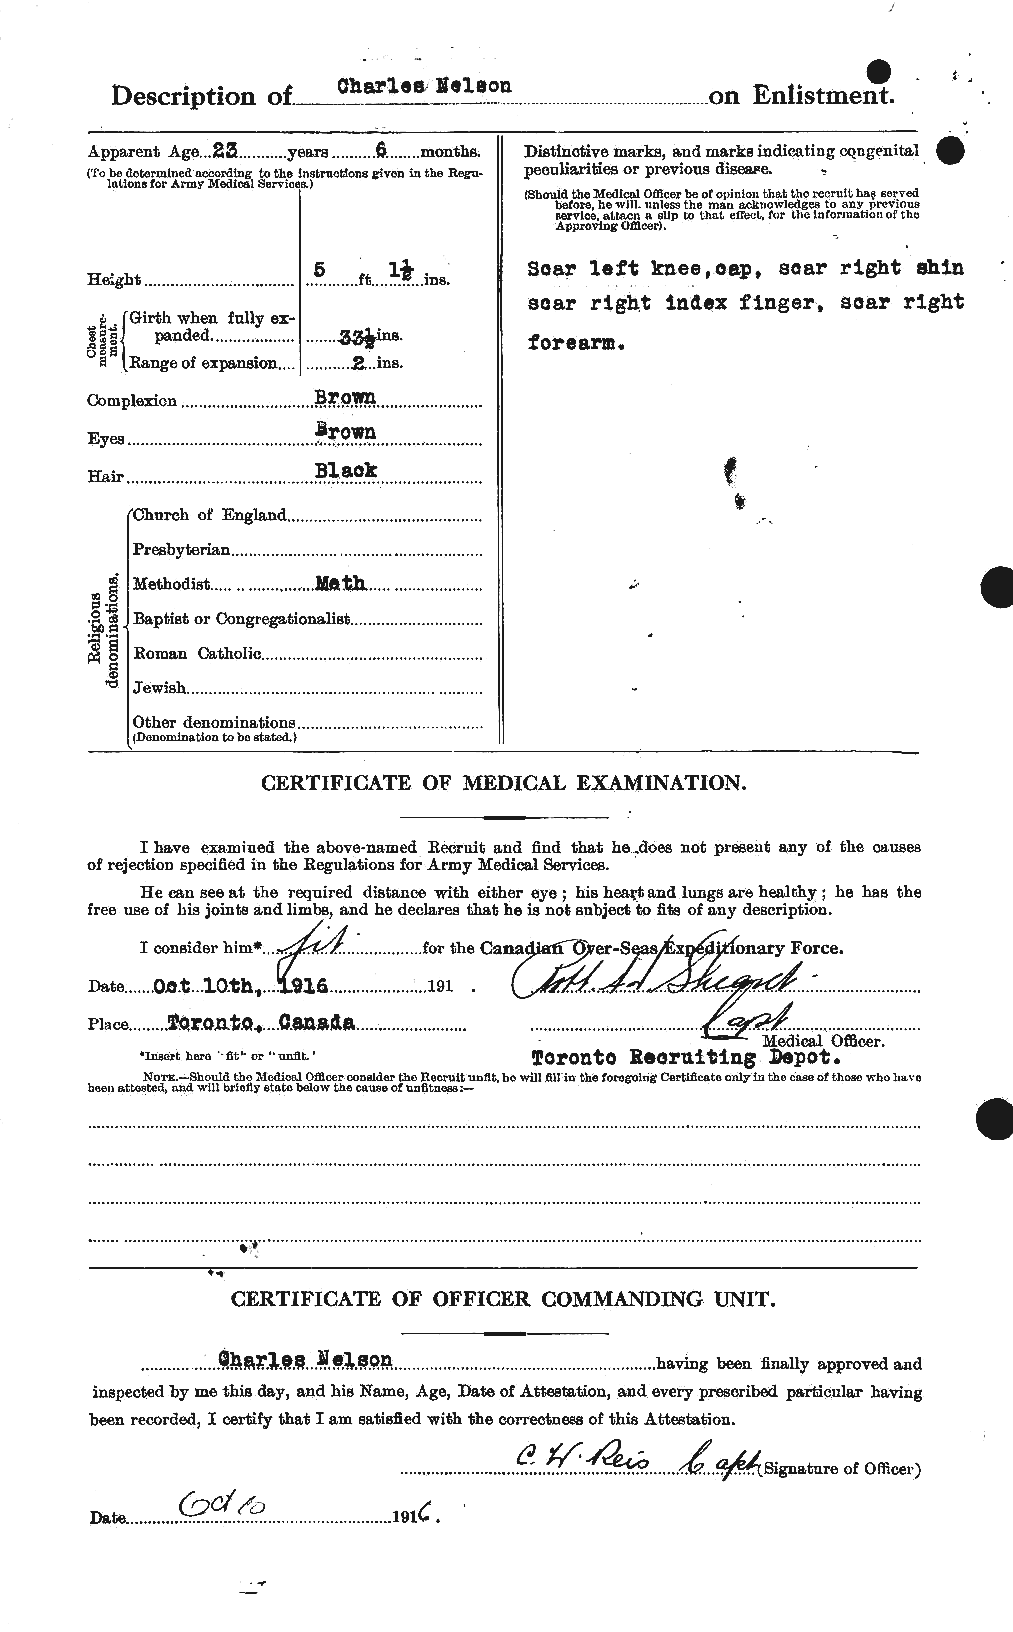 Dossiers du Personnel de la Première Guerre mondiale - CEC 547538b